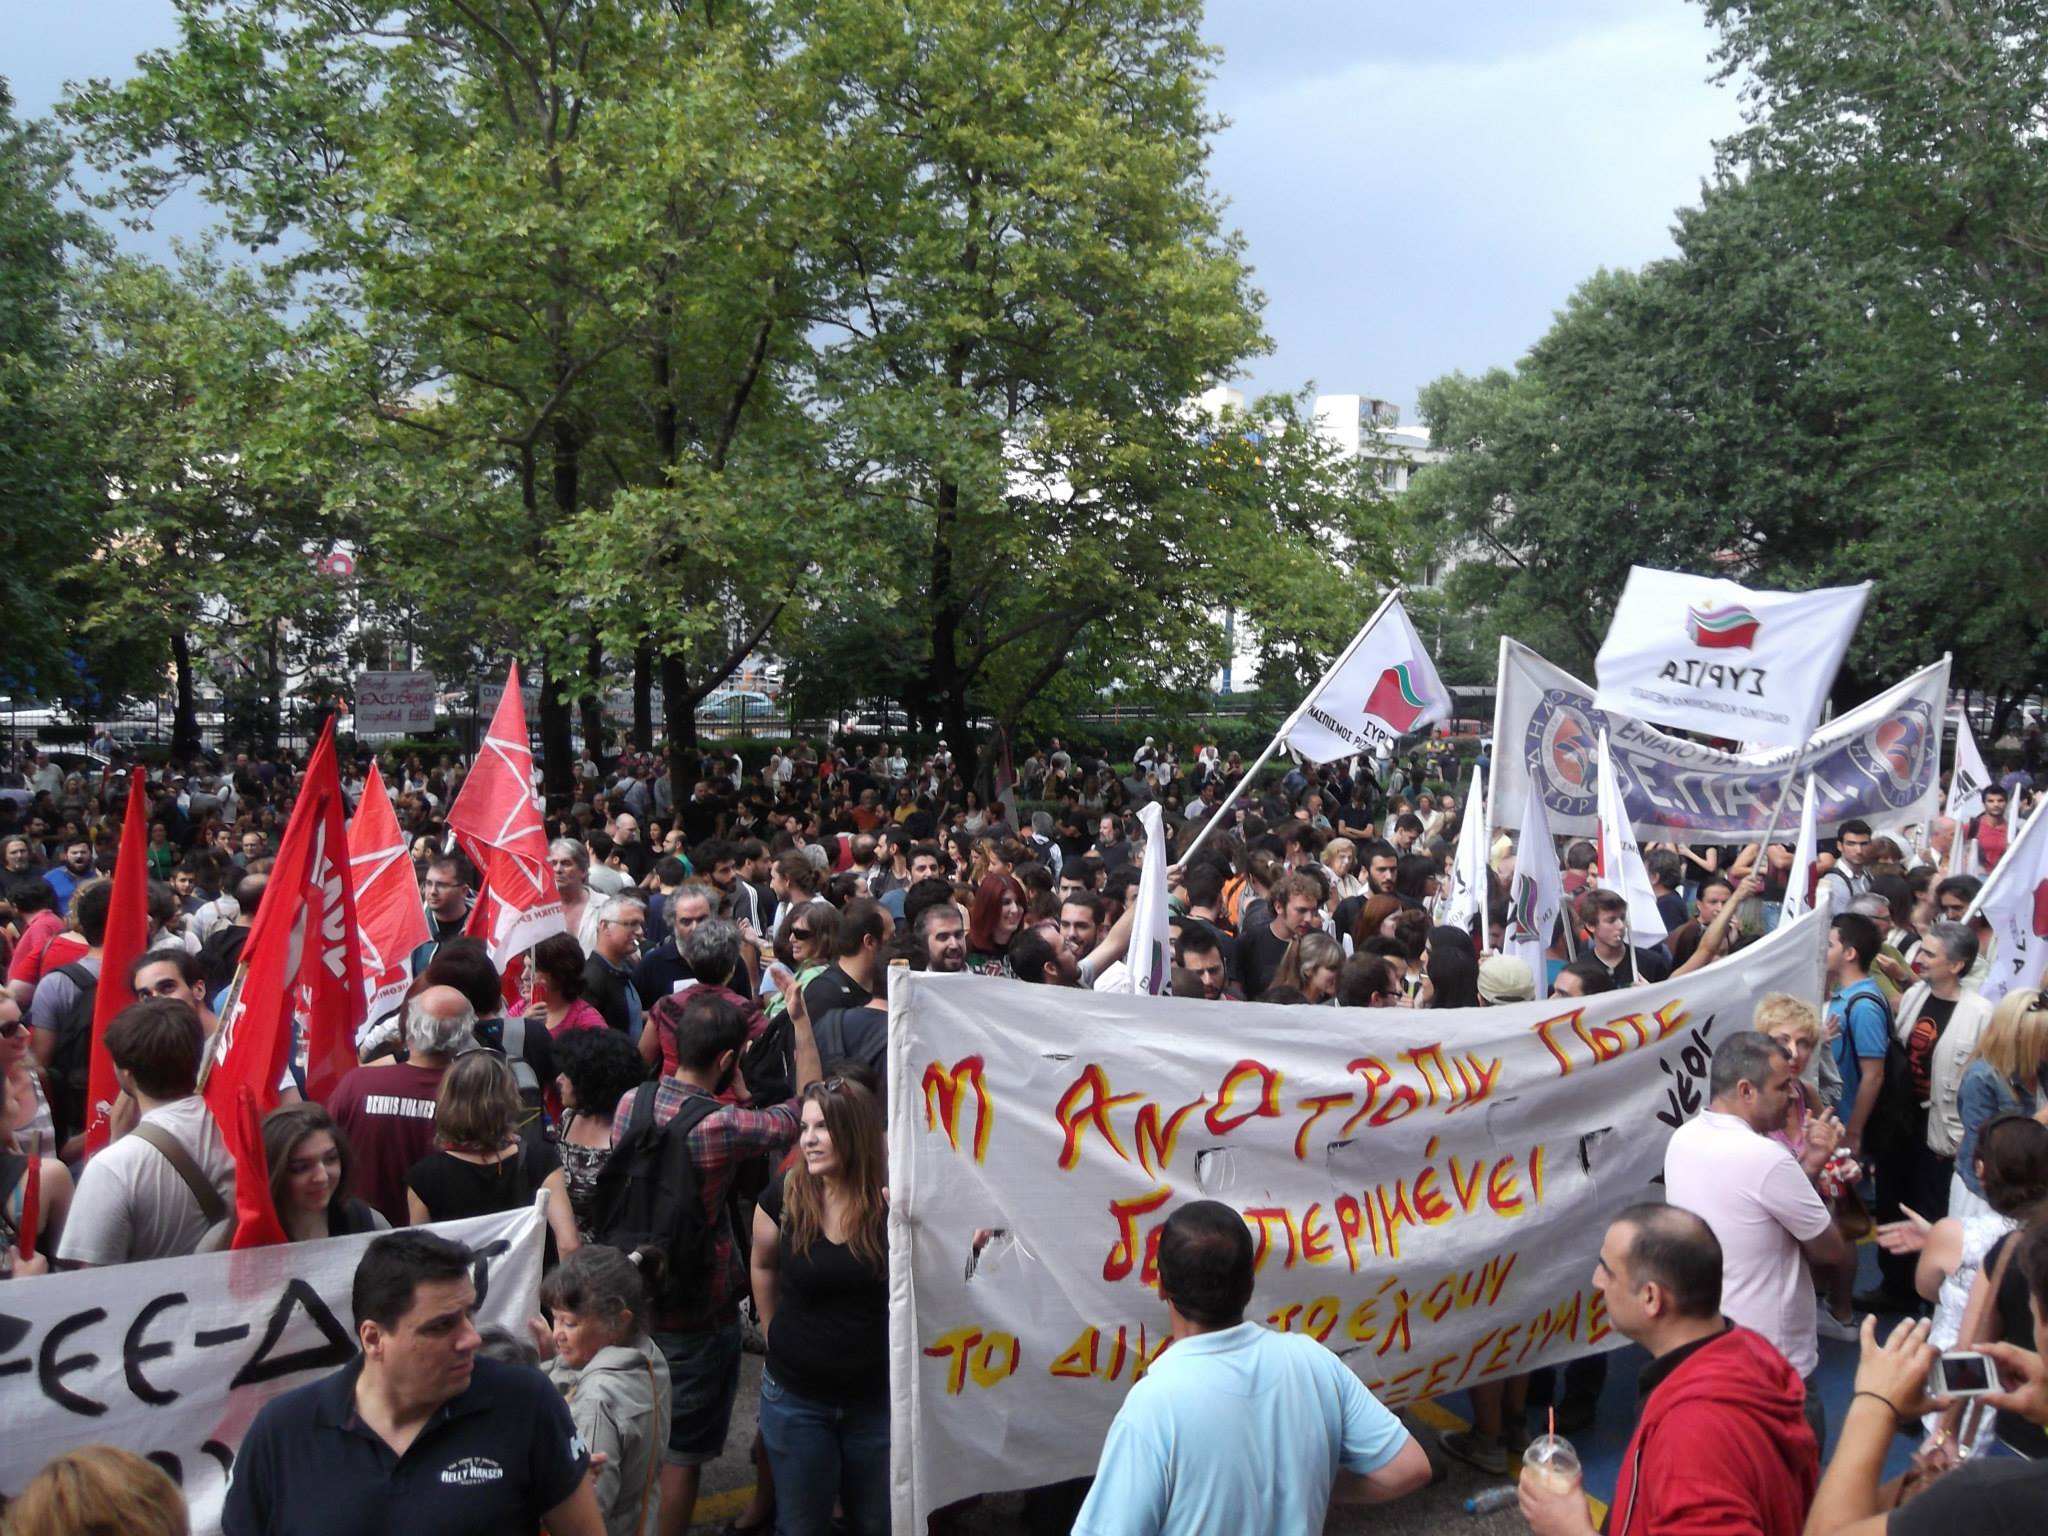 Kreikassa alkoi jälleen uusi yleislakko protestina maan yleisradioyhtiön lakkauttamista vastaan. / Mikko Korhonen